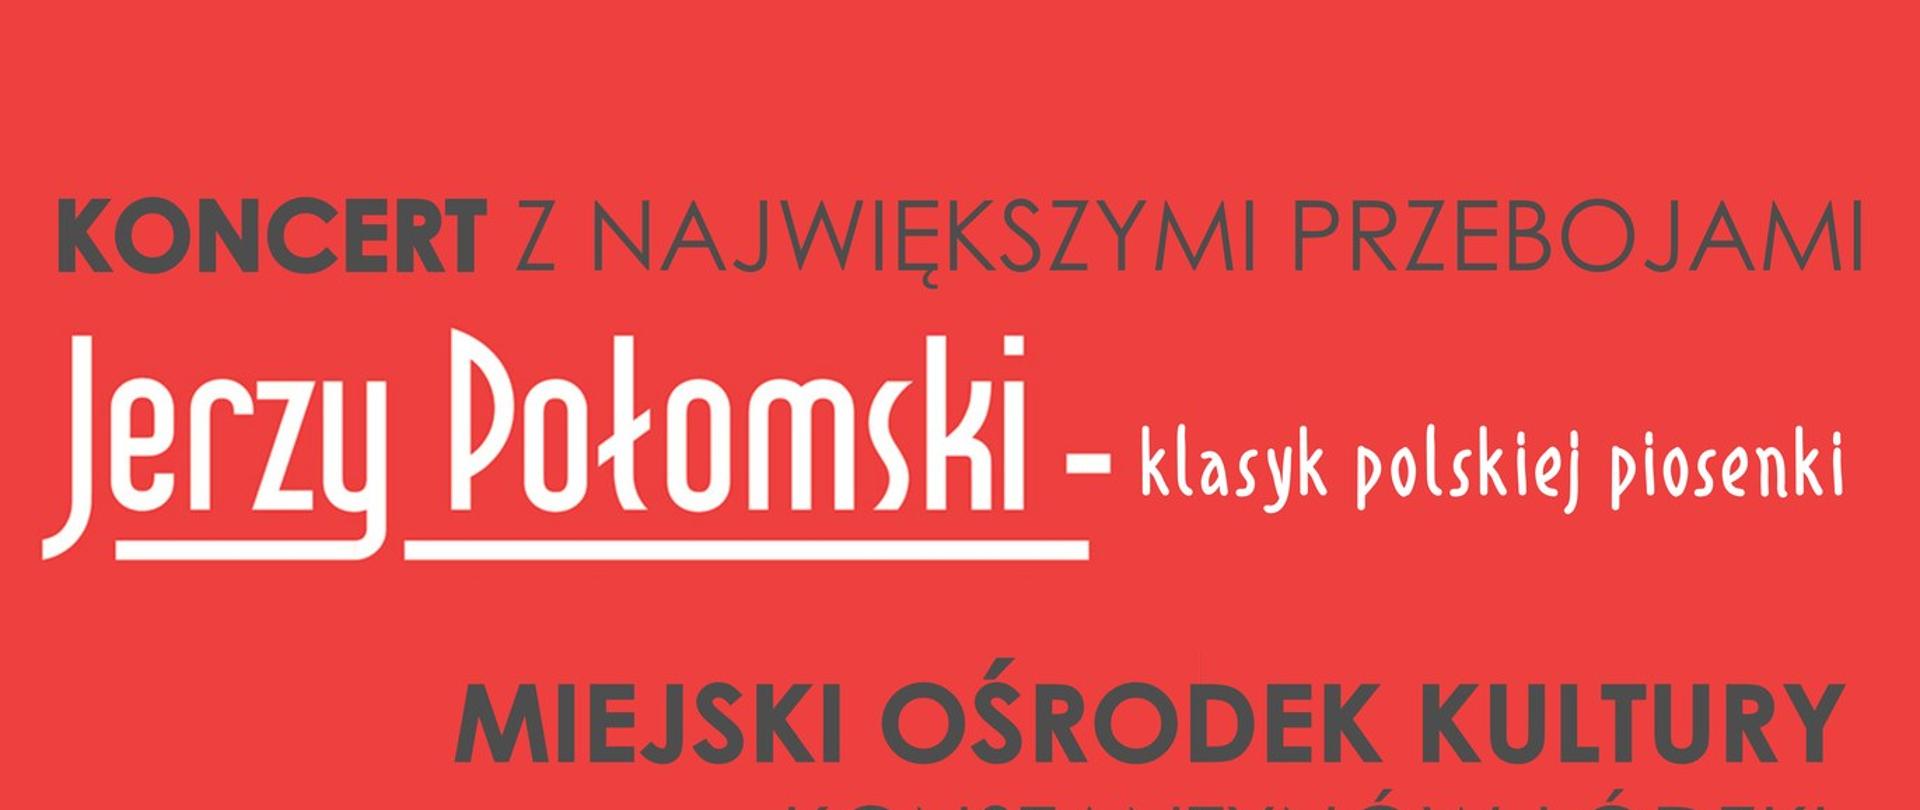 plakat koncertu, czerwono-białe tło, zdjęcie Jerzego Połomskiego, logo MOK.